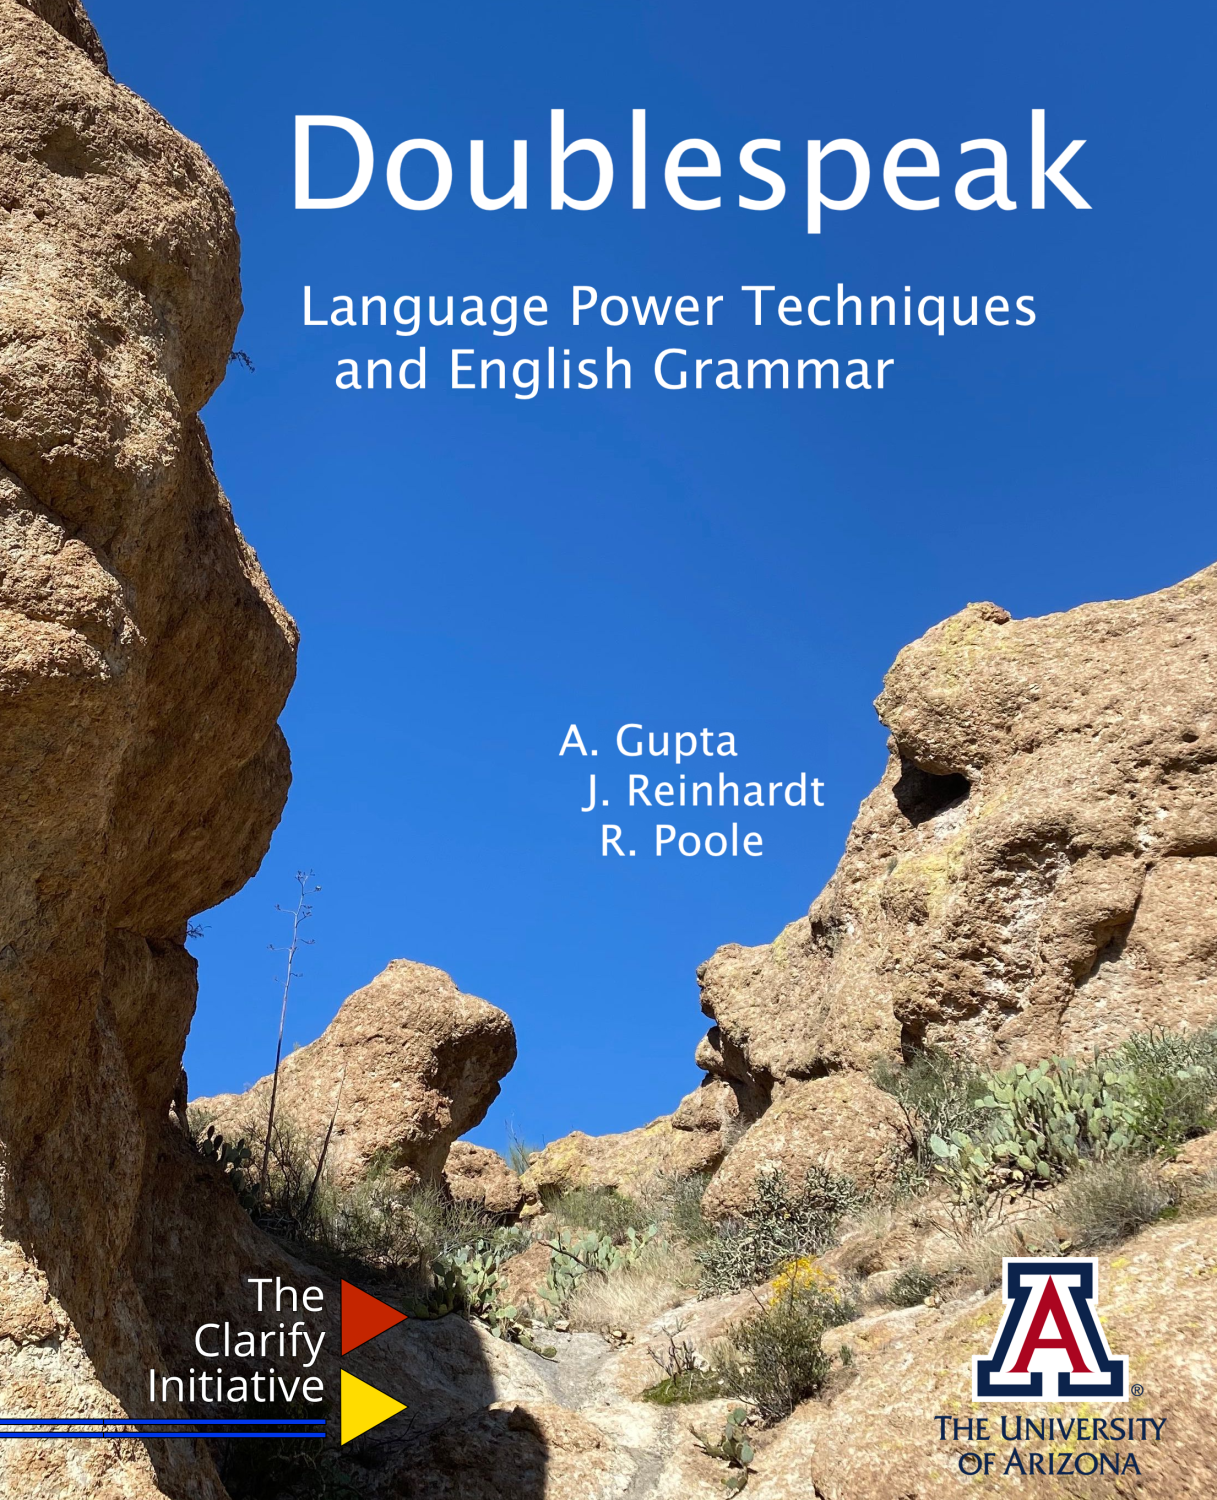 Cover image for Doublespeak: A Language Power Technique